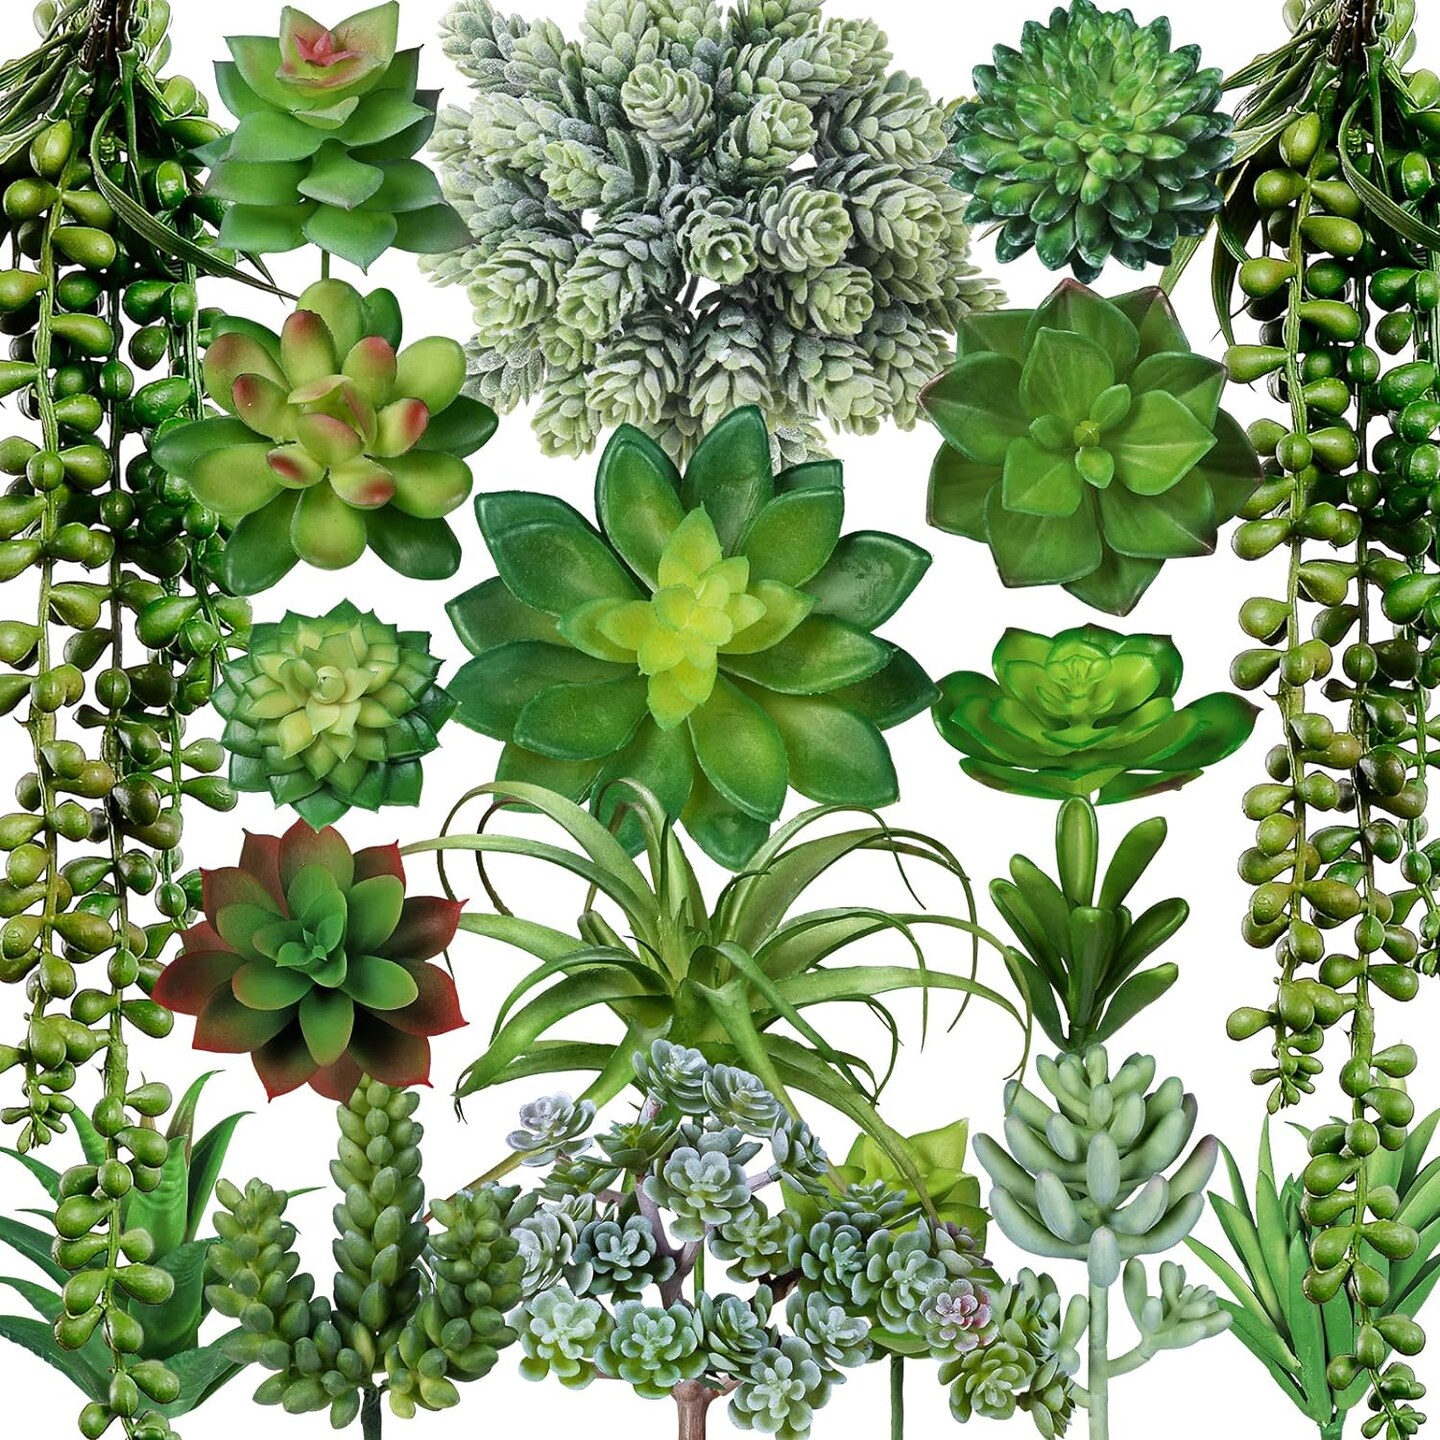 Assorted Succulent Plants for Home Decor Arrangement 19 pcs